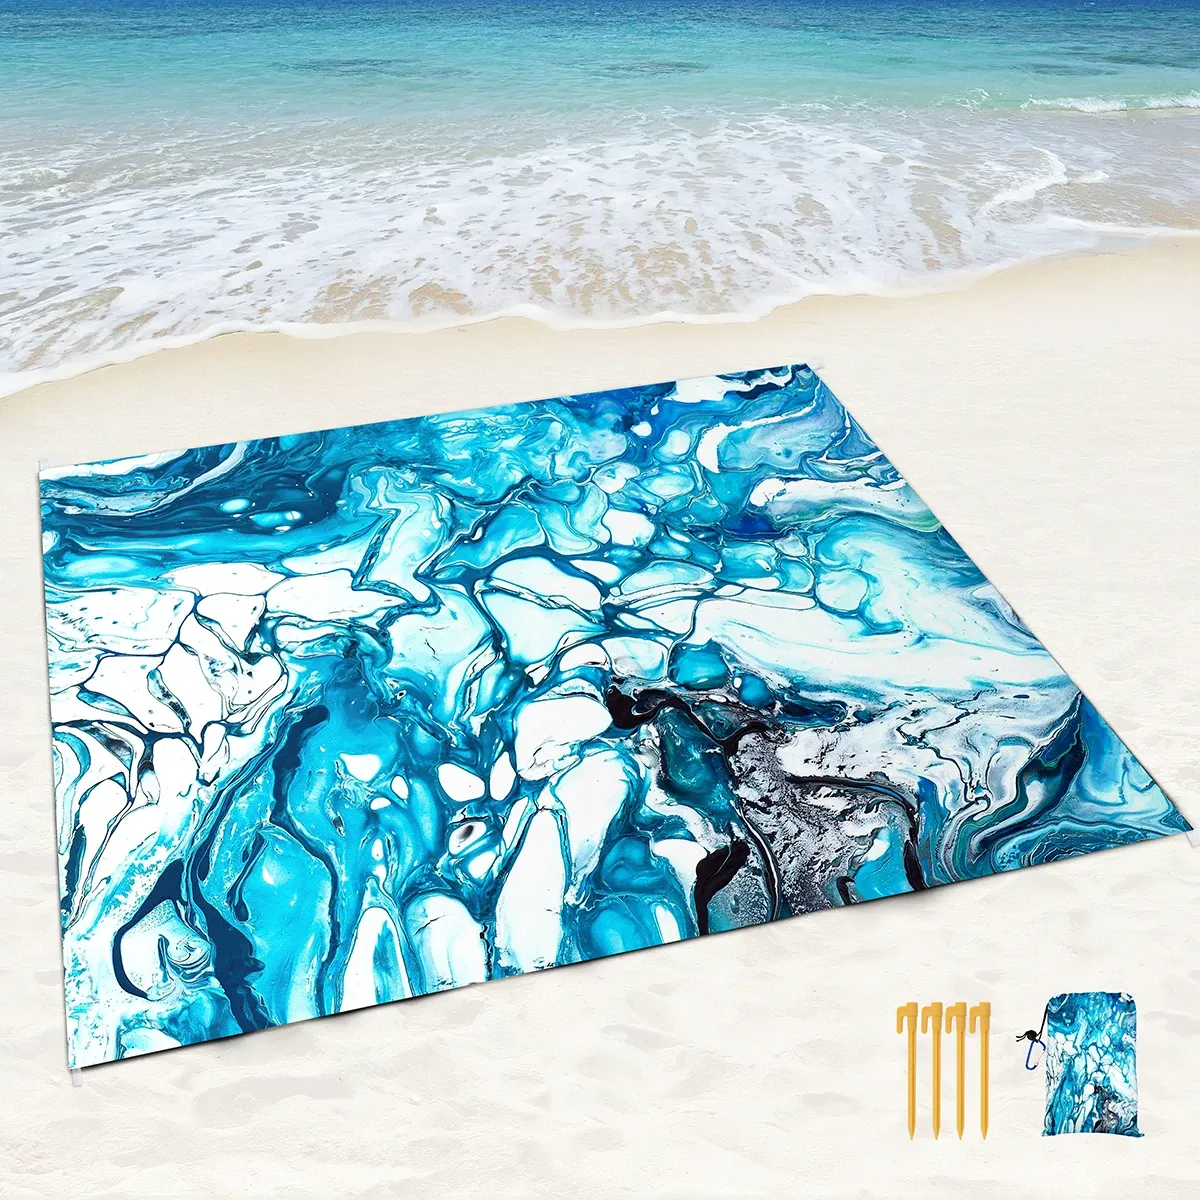 Tapis de plage imperméable et résistant au sable, tapis de pique-nique en marbre bleu noir avec poches de sable et piquets, tapis d'extérieur marbré pour bord de mer